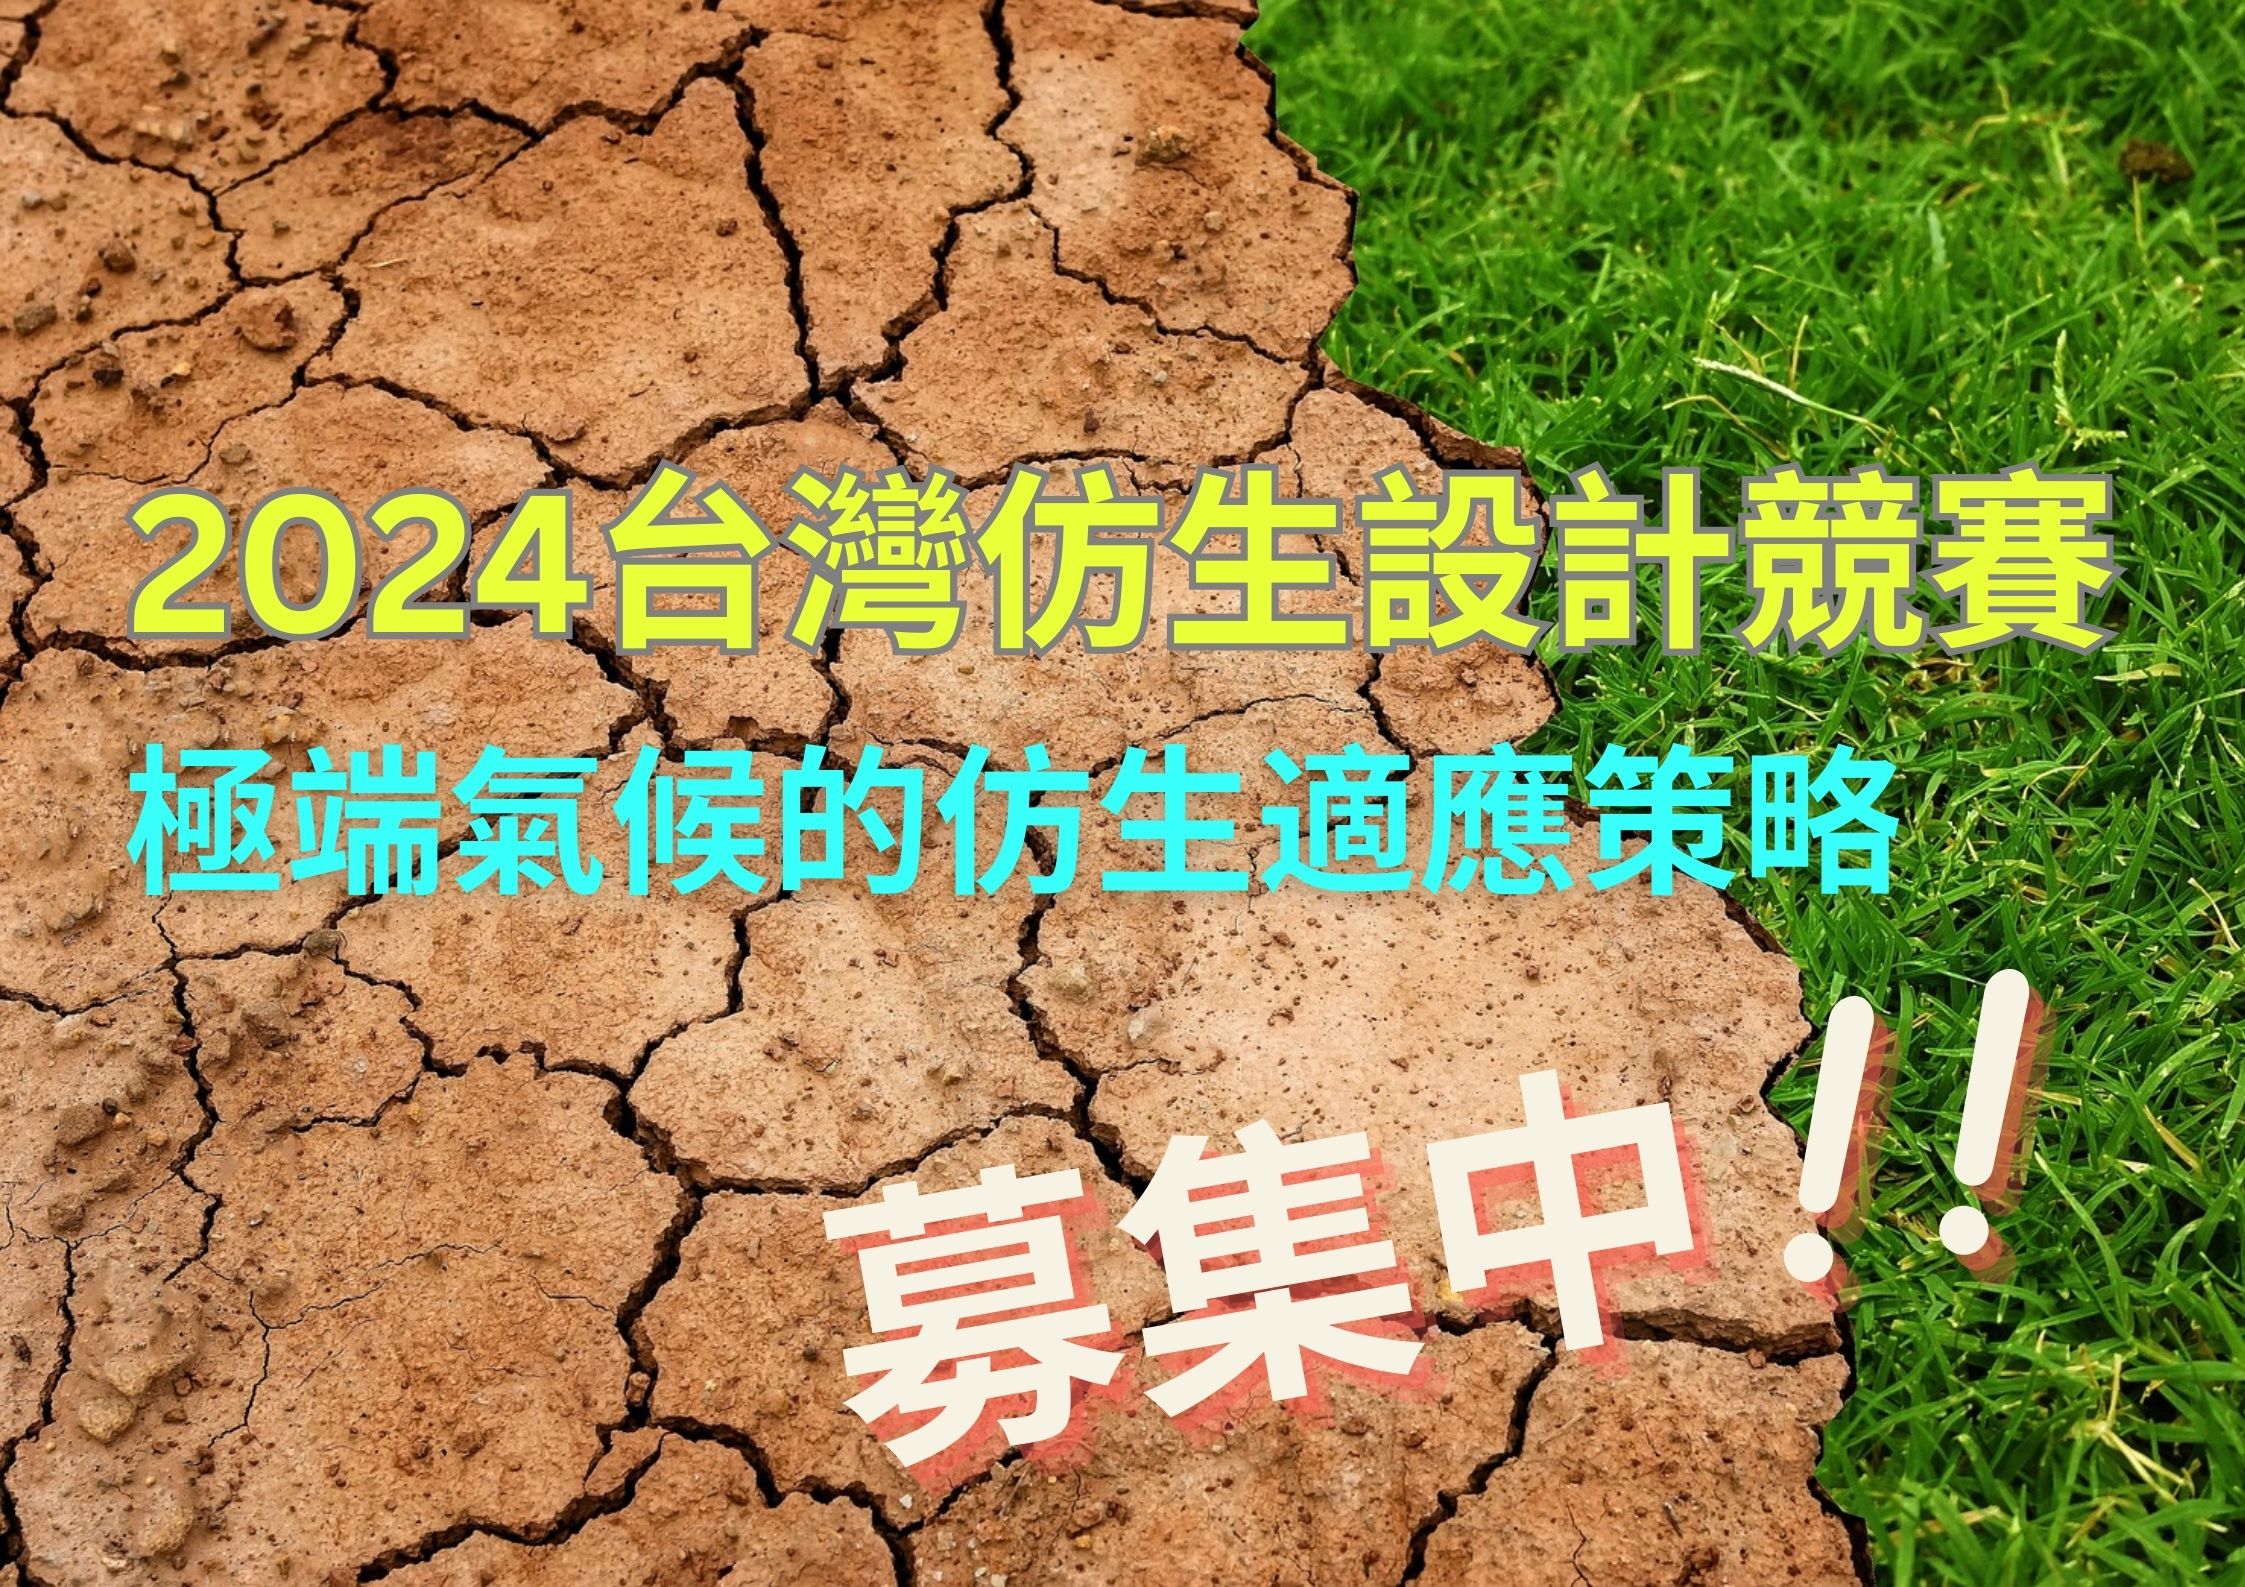 台灣仿生設計競賽徵選海報。(資料來源為台灣仿生科技發展協會)